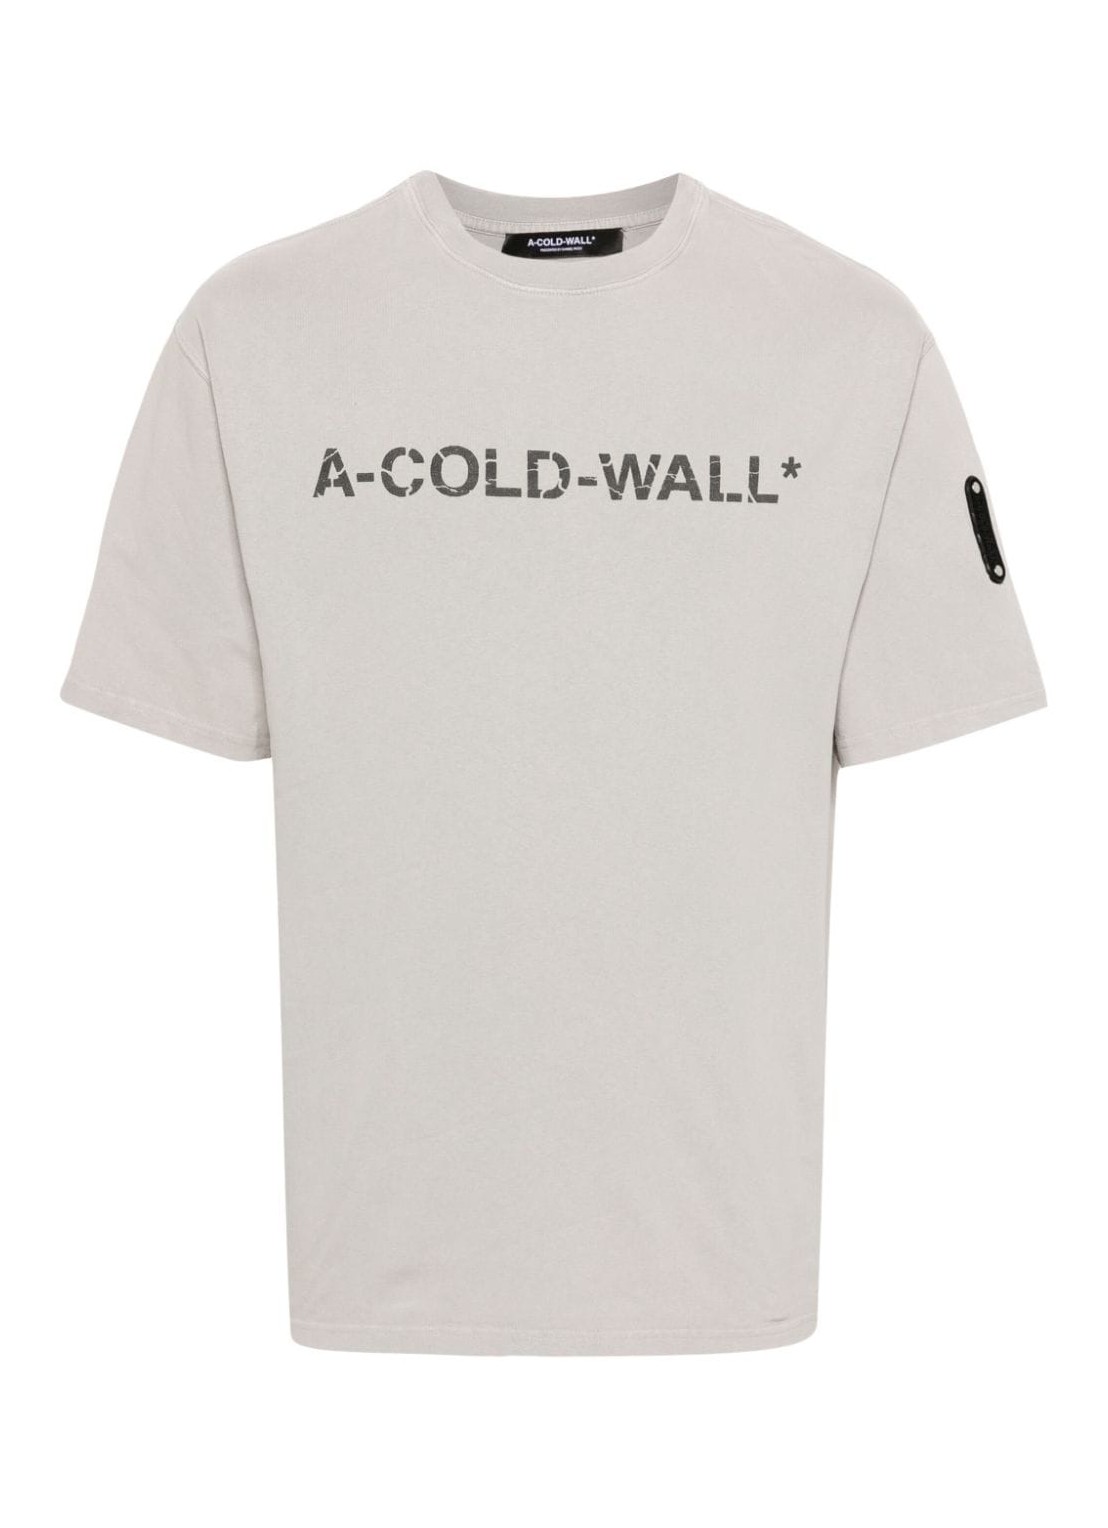 Camiseta a-cold-wall* t-shirt man overdye logo t-shirt acwmts186 cement cemt talla S
 